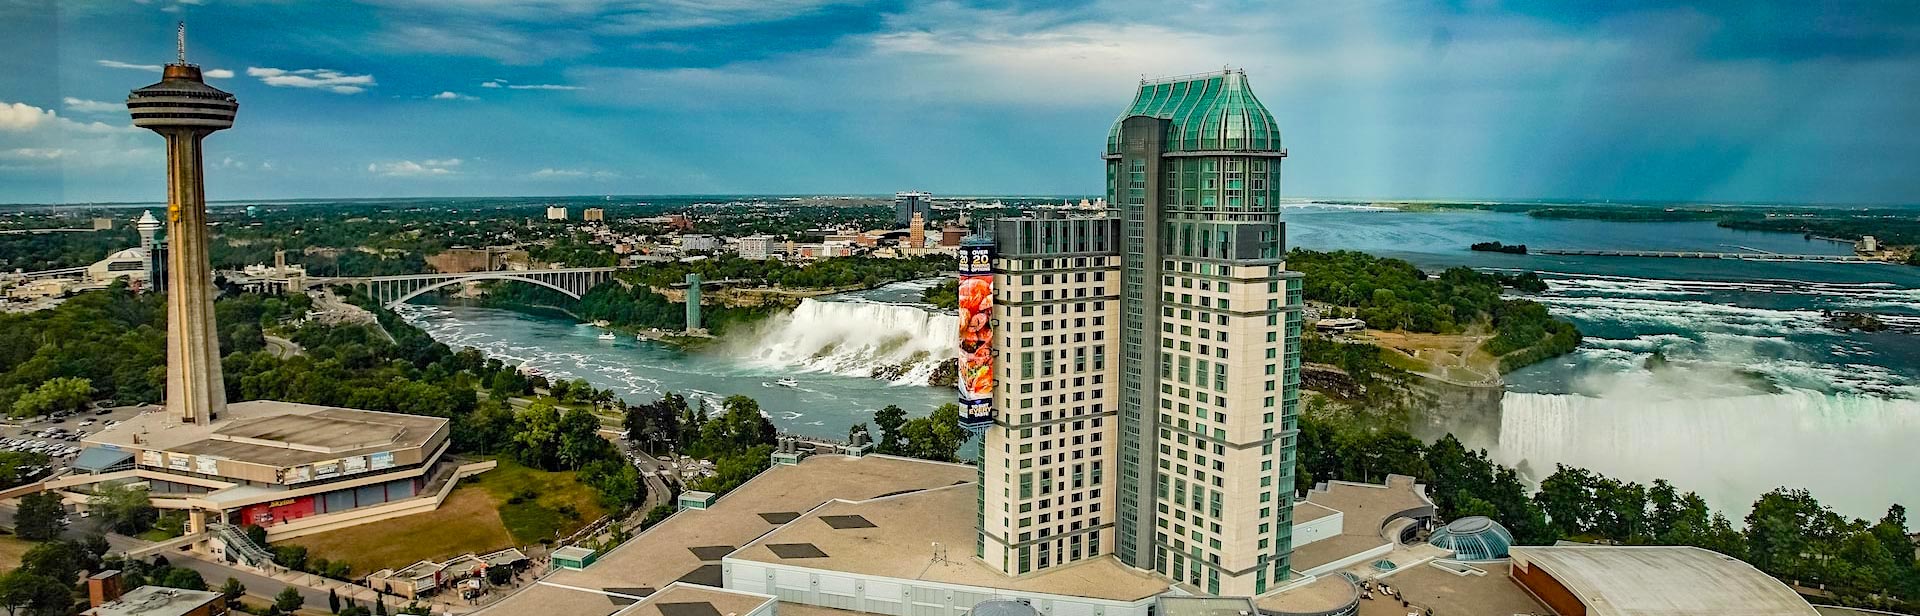 Blick auf die Niagarafälle vom Gebäude aus.